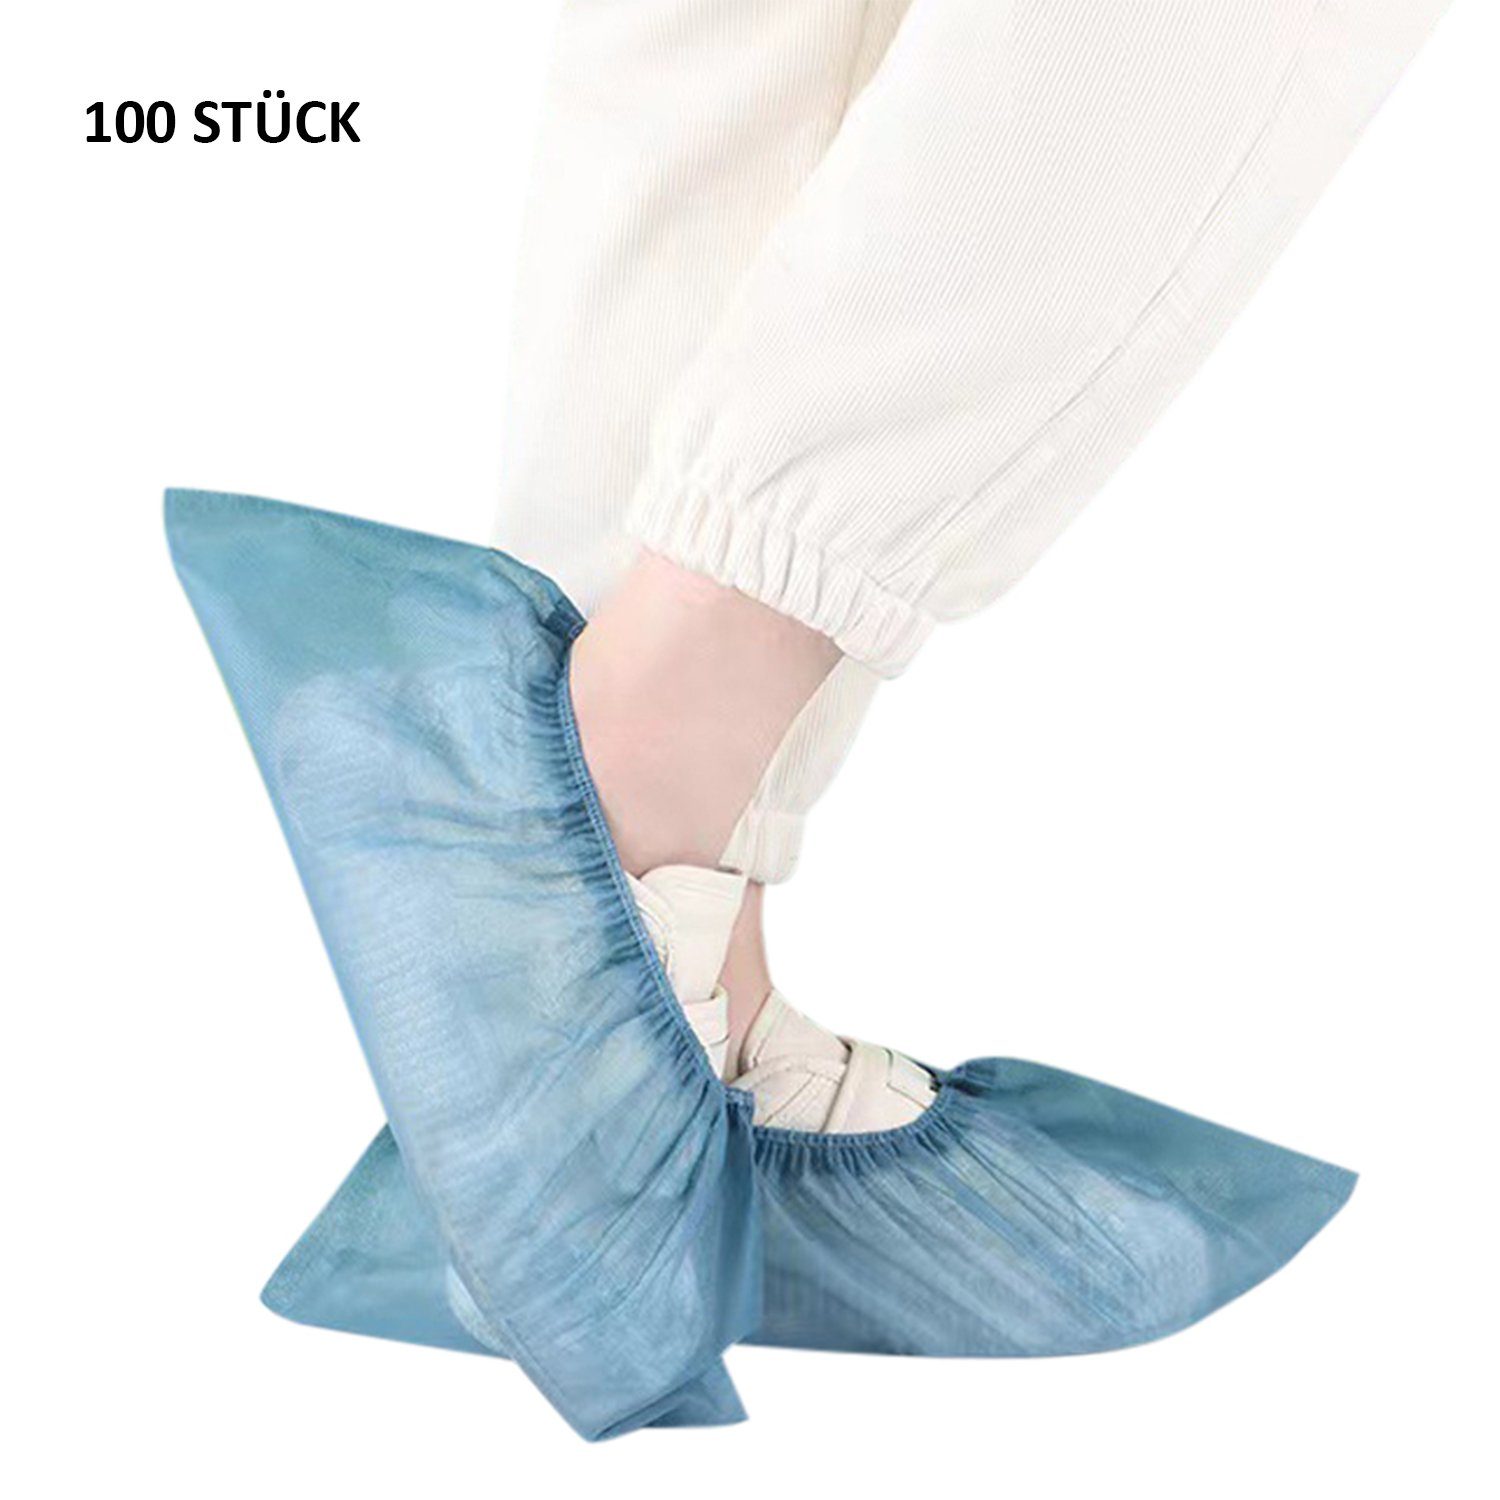 Daisred Schuhüberzieher 100 Stück Schuhüberzieher hygienische Einweg-Stiefel rutschfest Blau